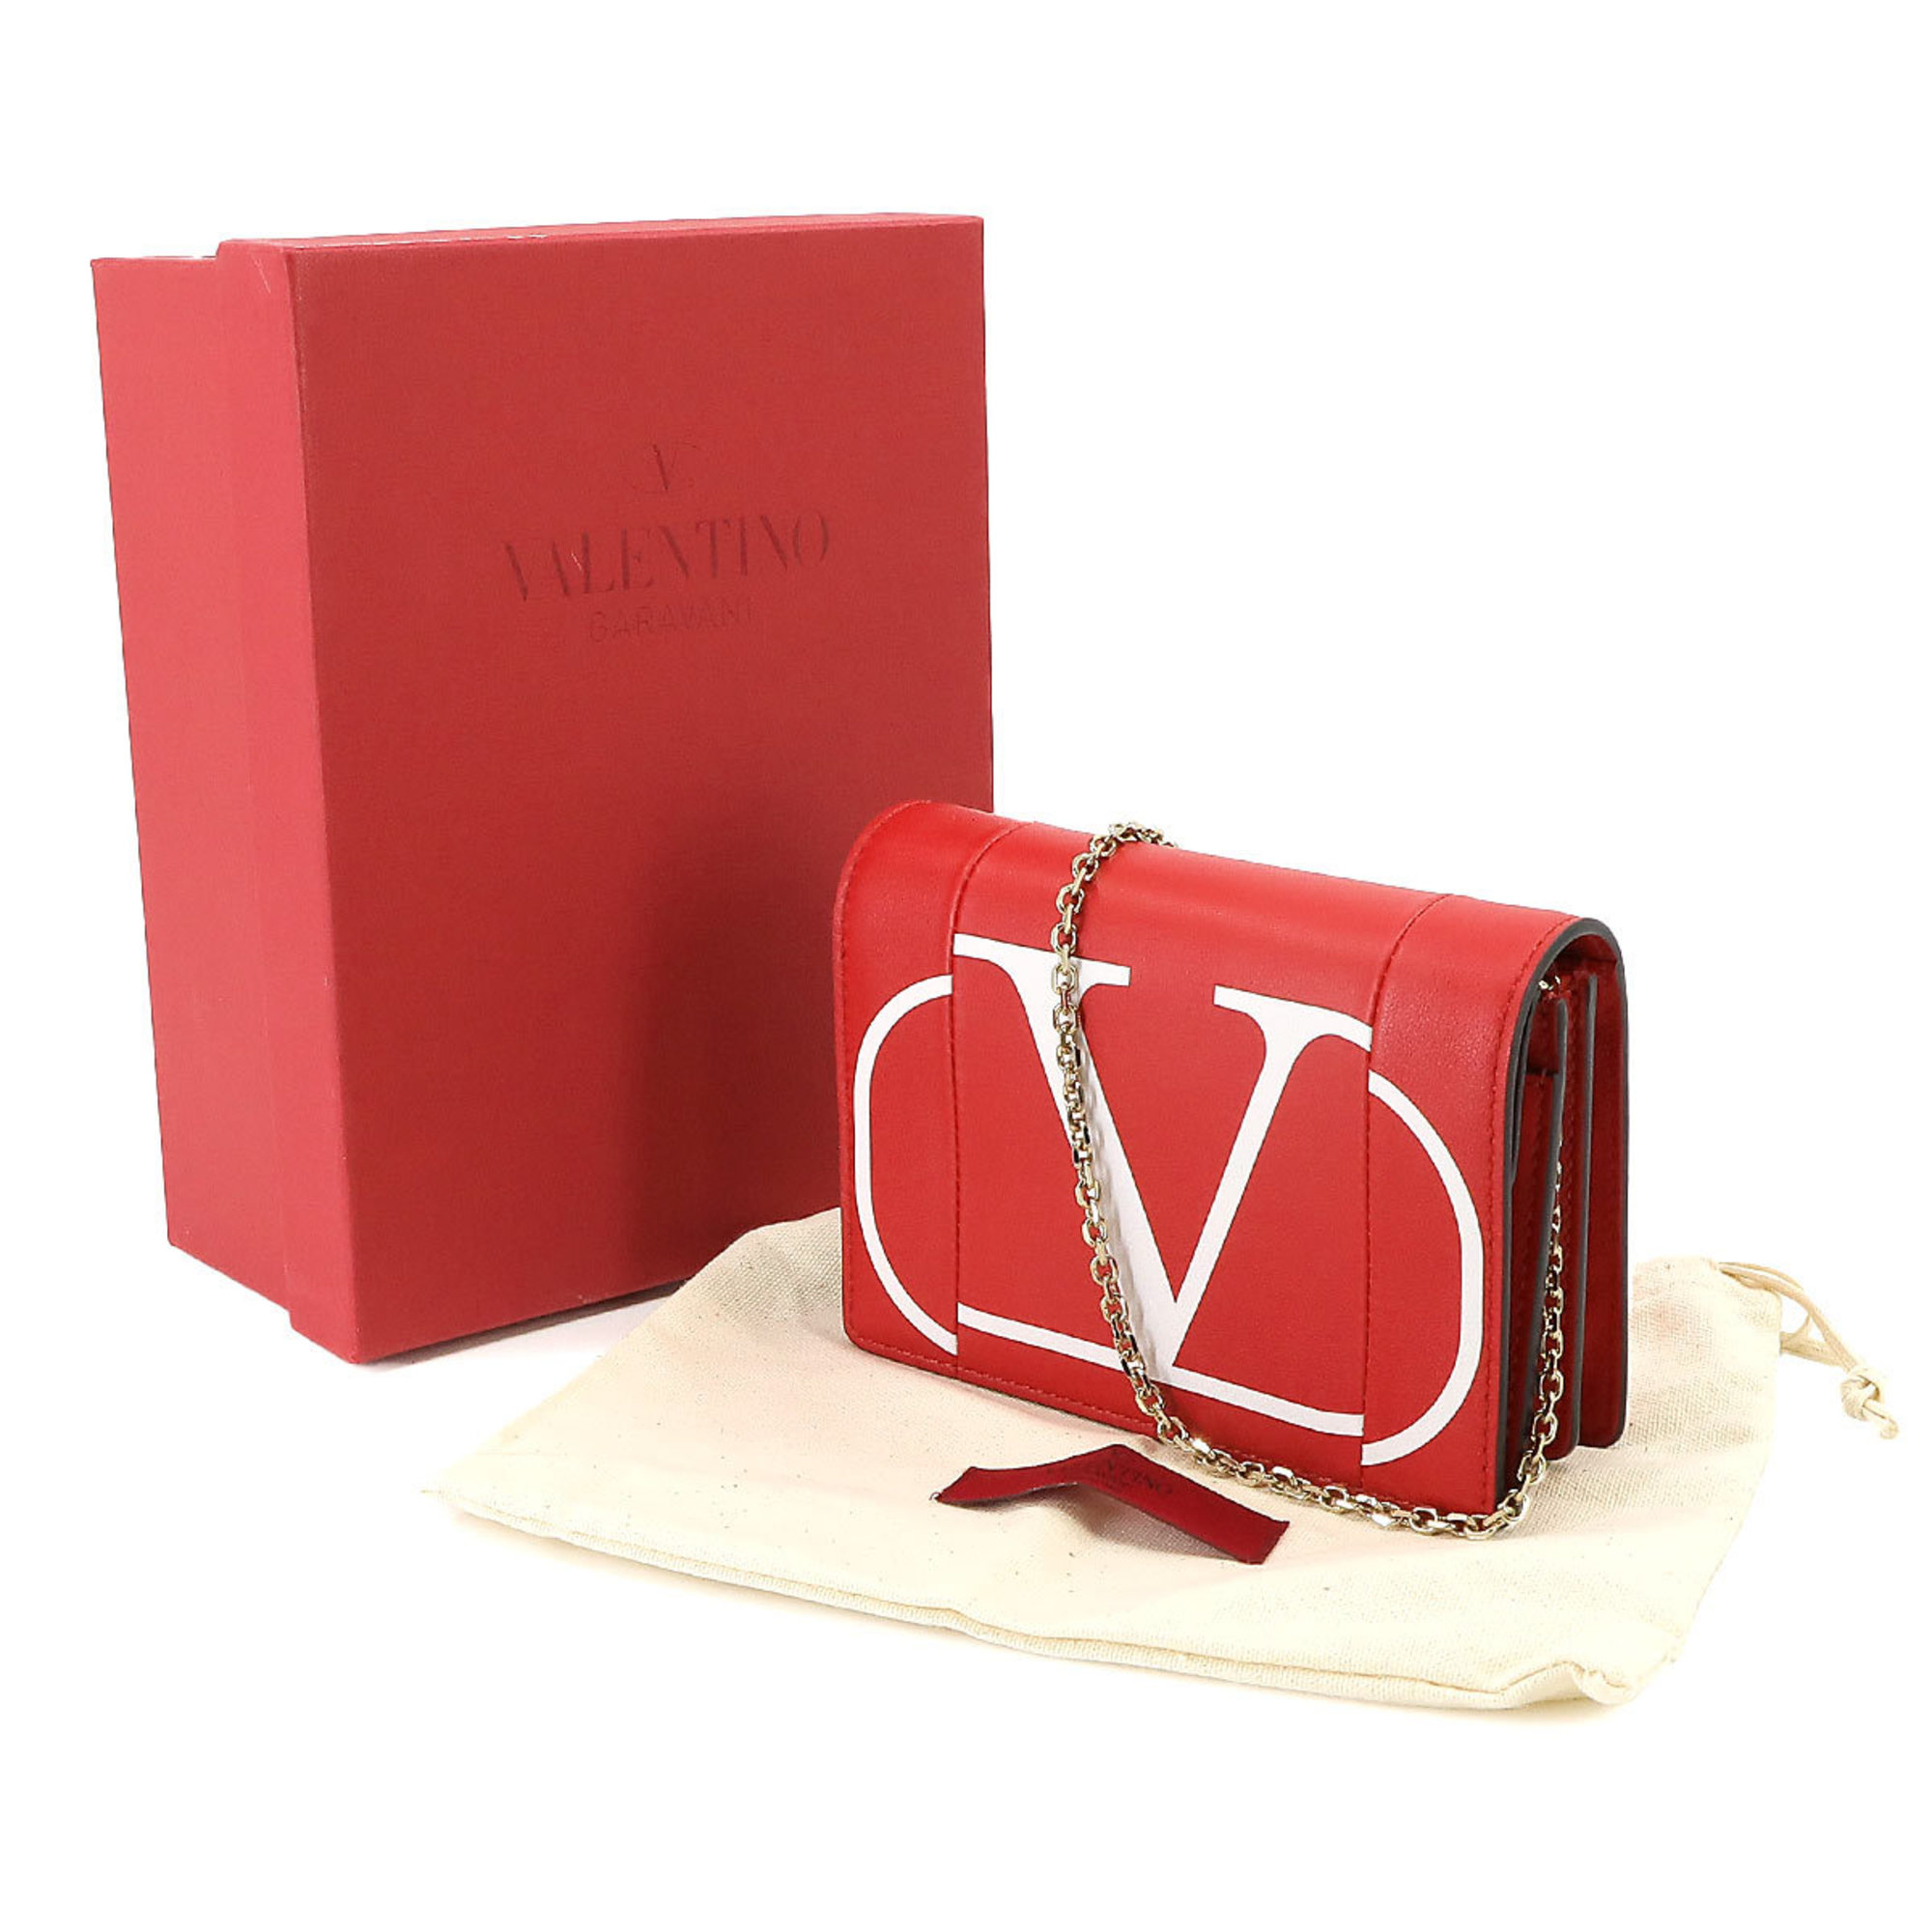 Valentino Garavani V Chain Shoulder Bag Leather Red White Logos